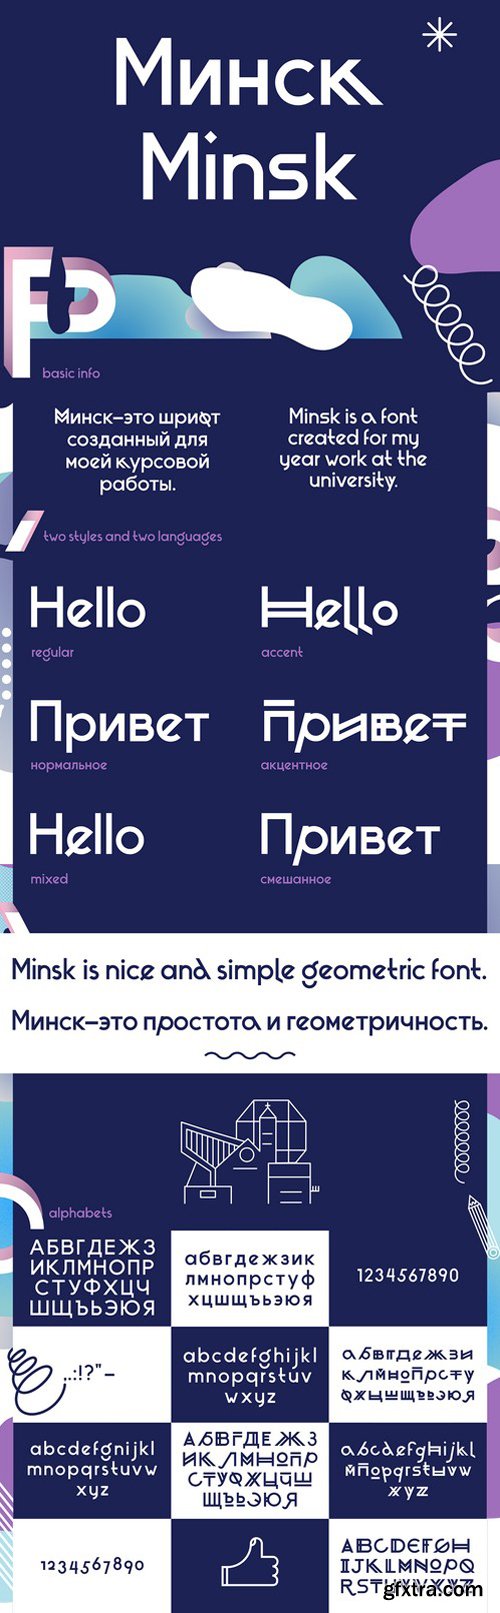 Minsk - Typeface